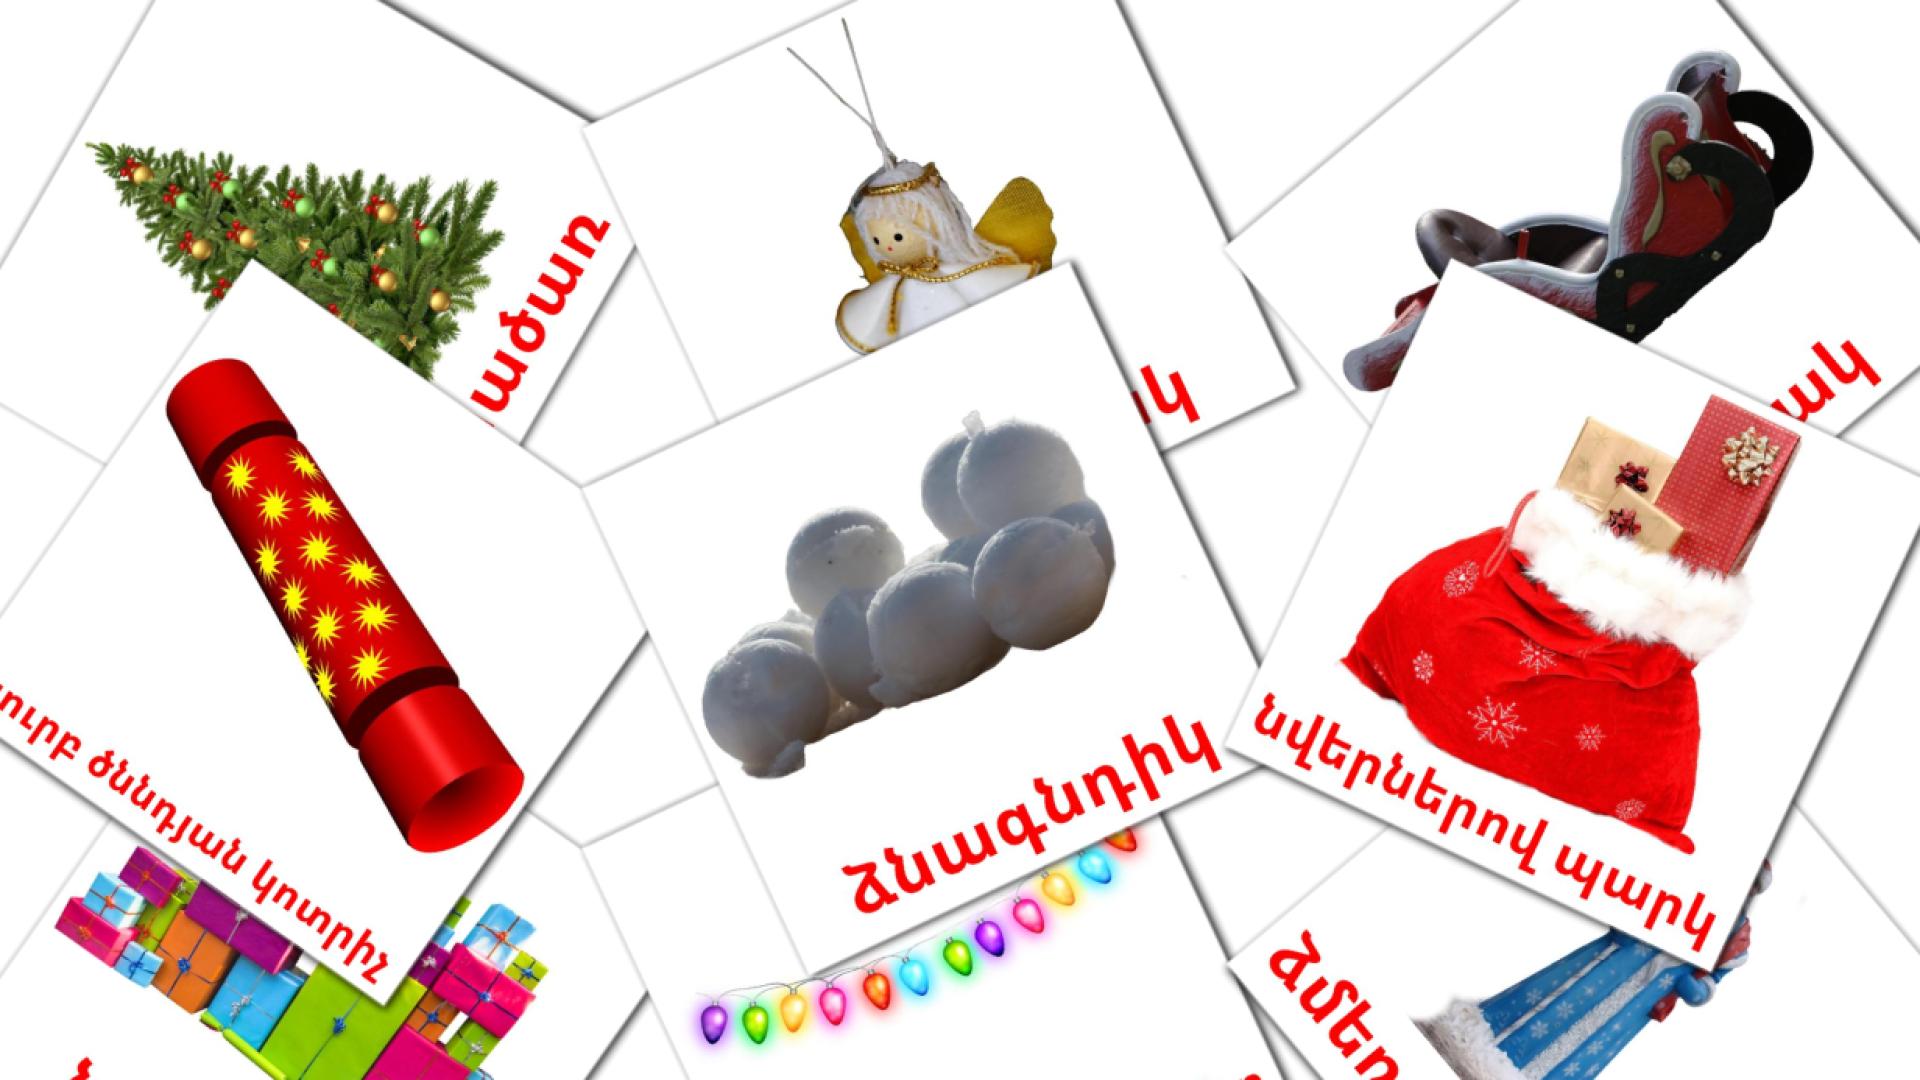 Kerstmis - armeensee woordenschatkaarten